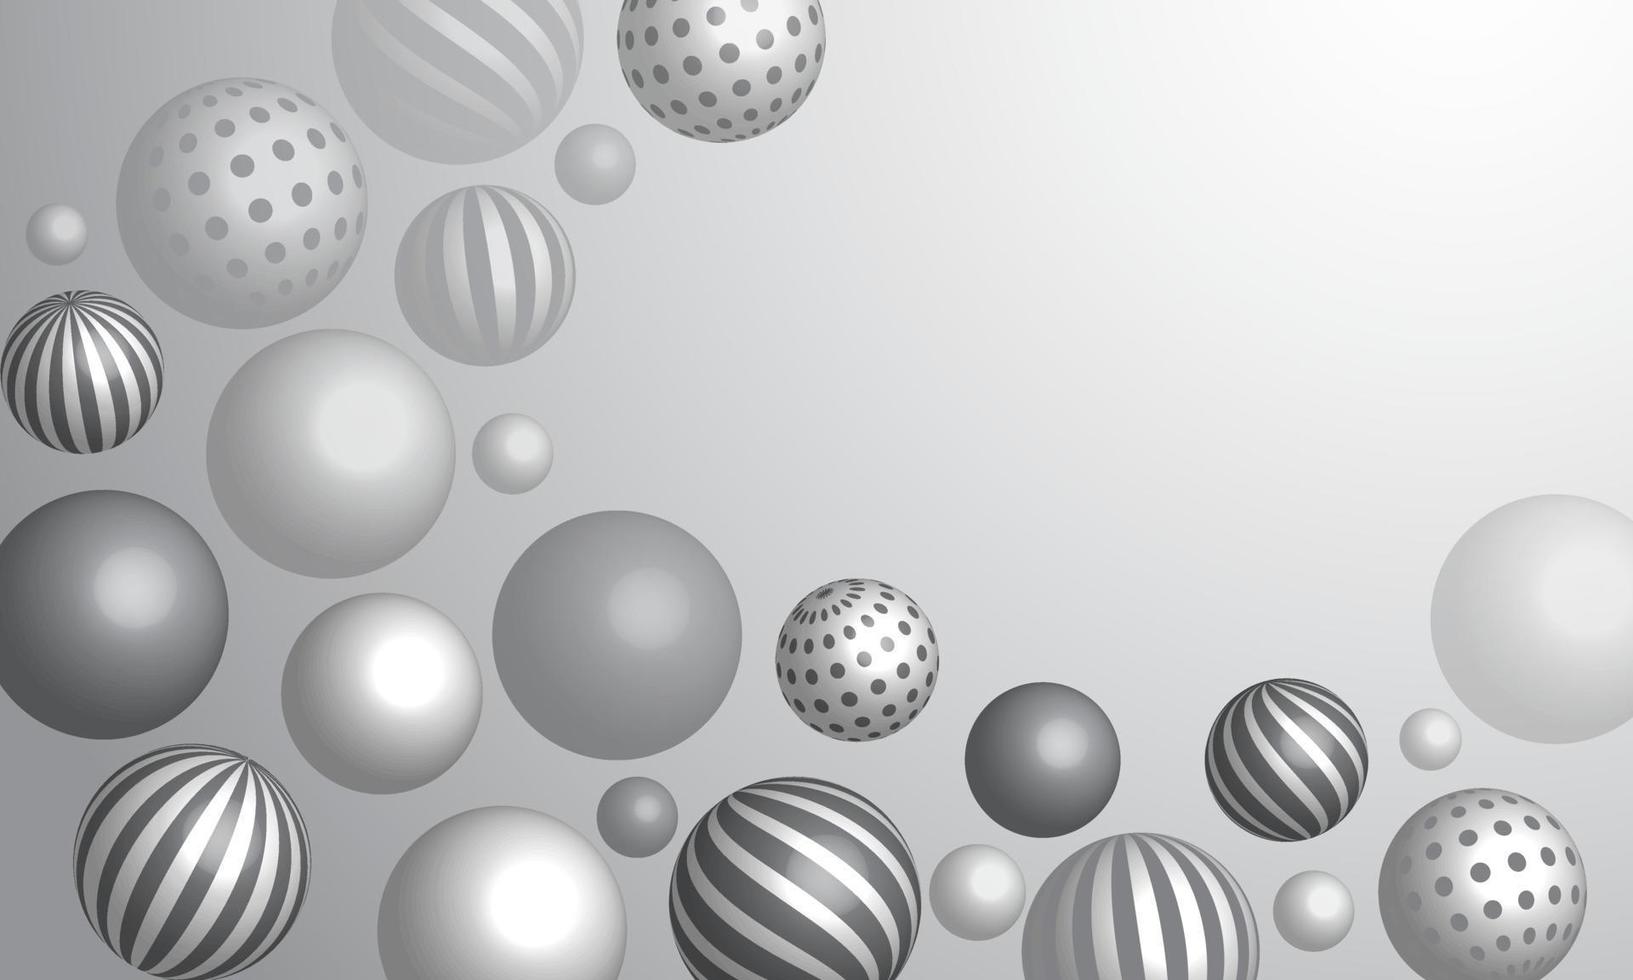 abstrato com esferas 3d dinâmicas. bolhas brancas e cinzas. ilustração em vetor de bolas texturizadas com um padrão listrado. design moderno de banner ou pôster na moda